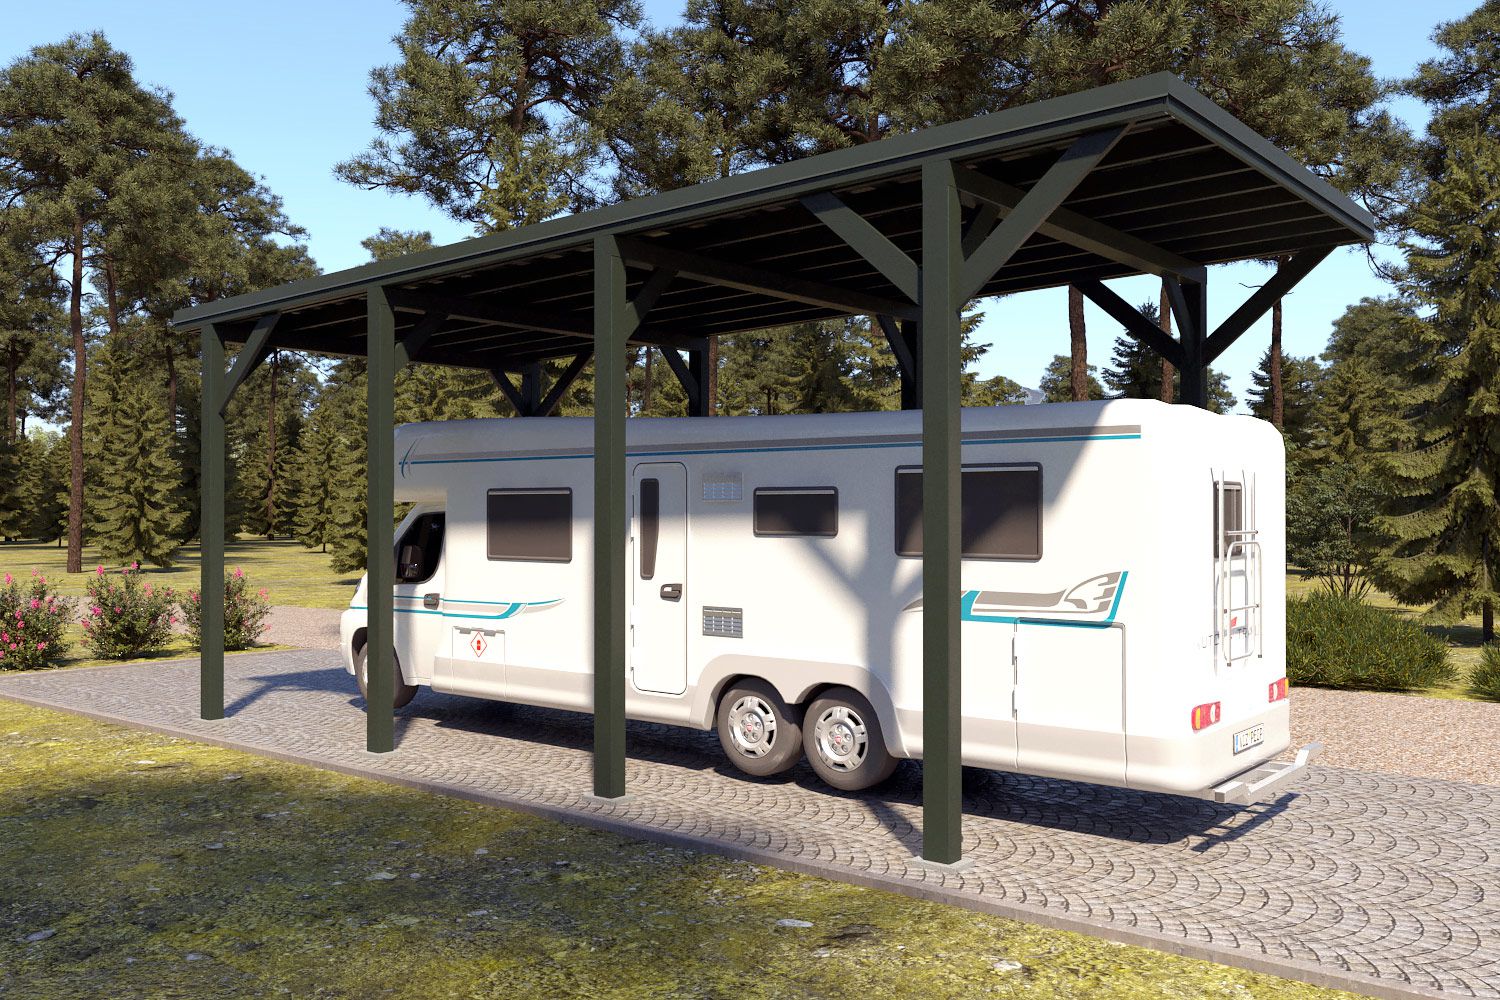 Camper / caravan carport "Stable" 8 x 4 m (LxB) / 250 kg/m² dak belasting / 32 m² / Chroomoxidegroen met doorngroen dak